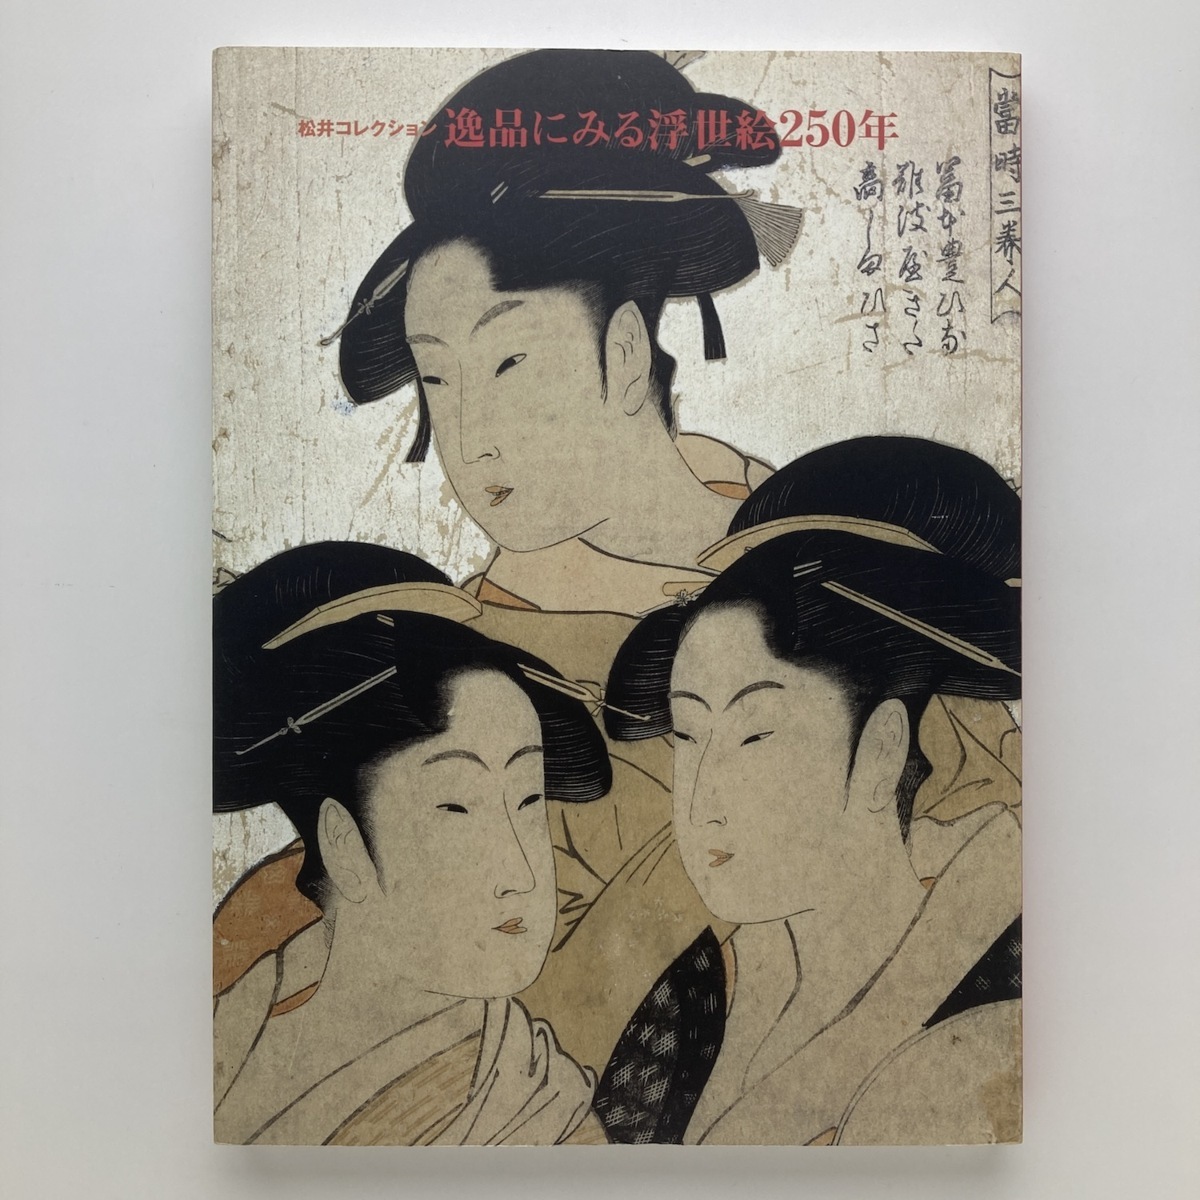 مجموعة ماتسوي: 250 عامًا من روائع أوكييو-إي, نيهون كيزاي شيمبون, شركة., متحف أوداكيو للفنون, 1998, يو ميل, تلوين, كتاب فن, مجموعة, فهرس